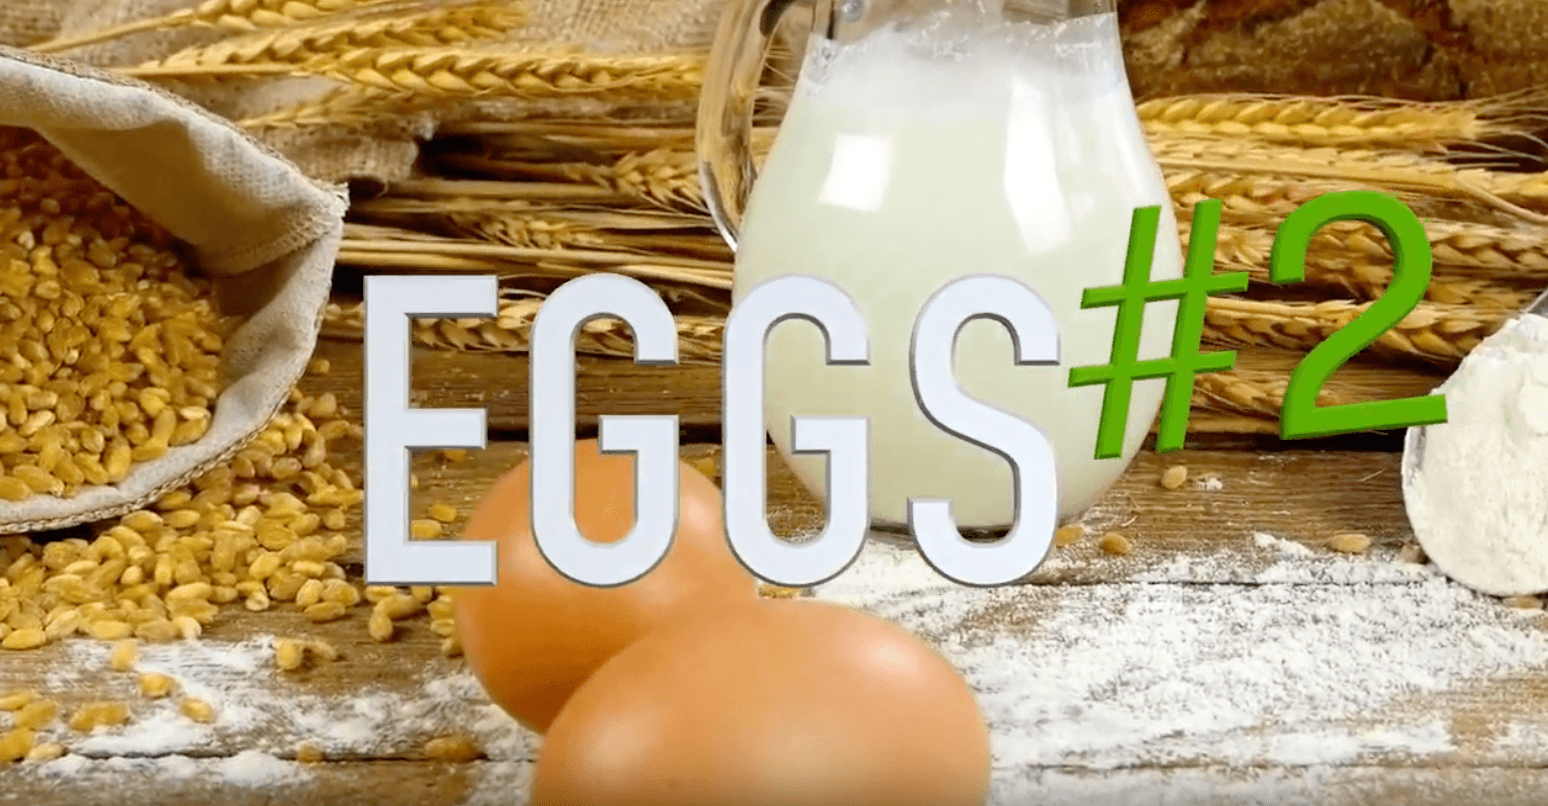 Easy Vegan Hack 9 for Veganuary - Eggs Substitute #2